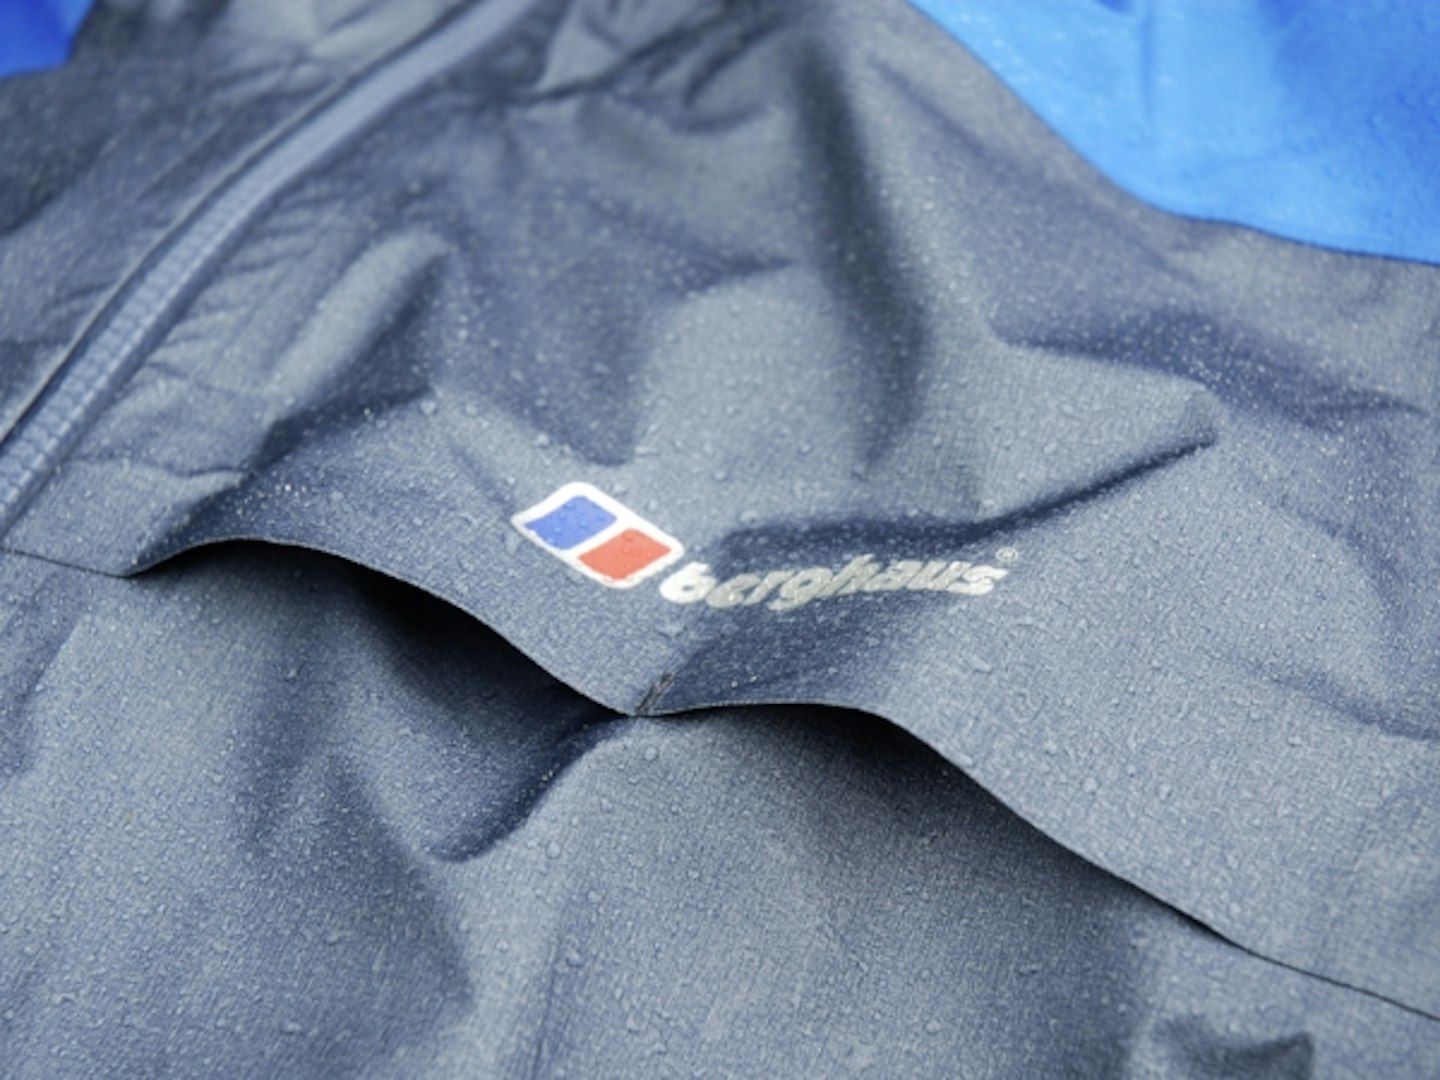 Berghaus GR20 Storm Waterproof Jacket Review